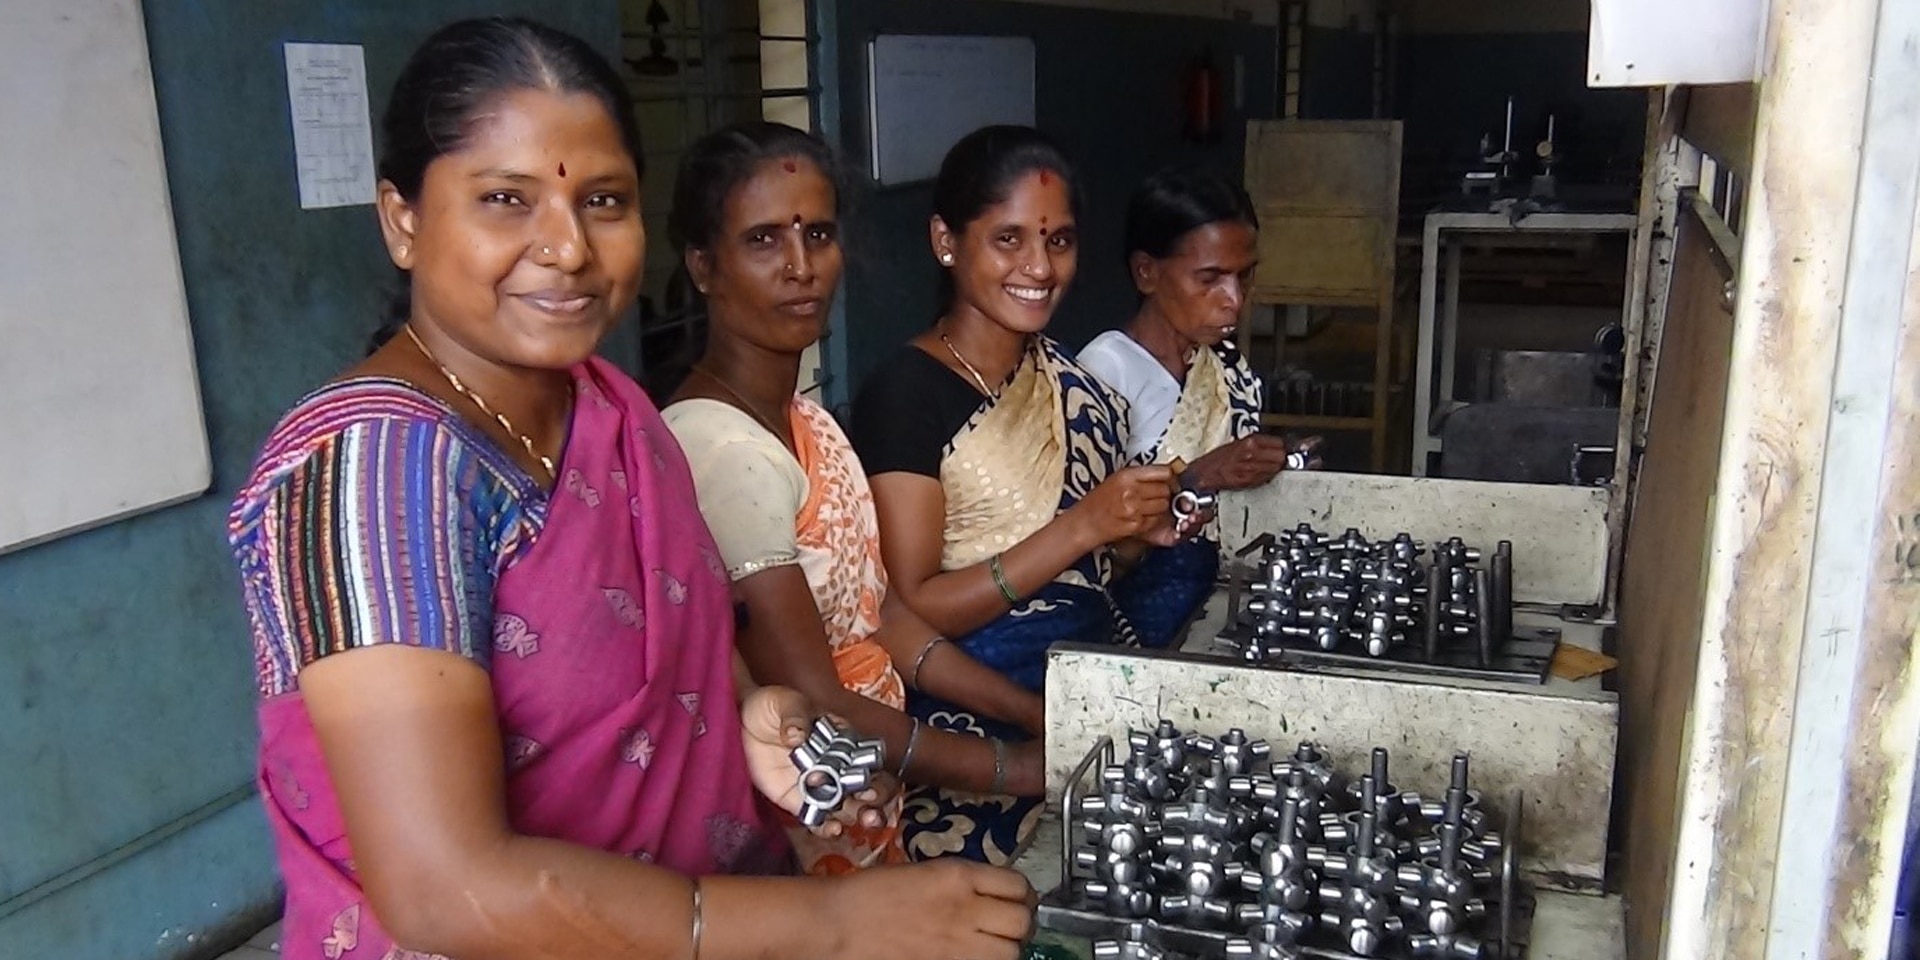 À l’image, quatre femmes d’origine indienne posent souriantes face à des pièces de métal à assembler.